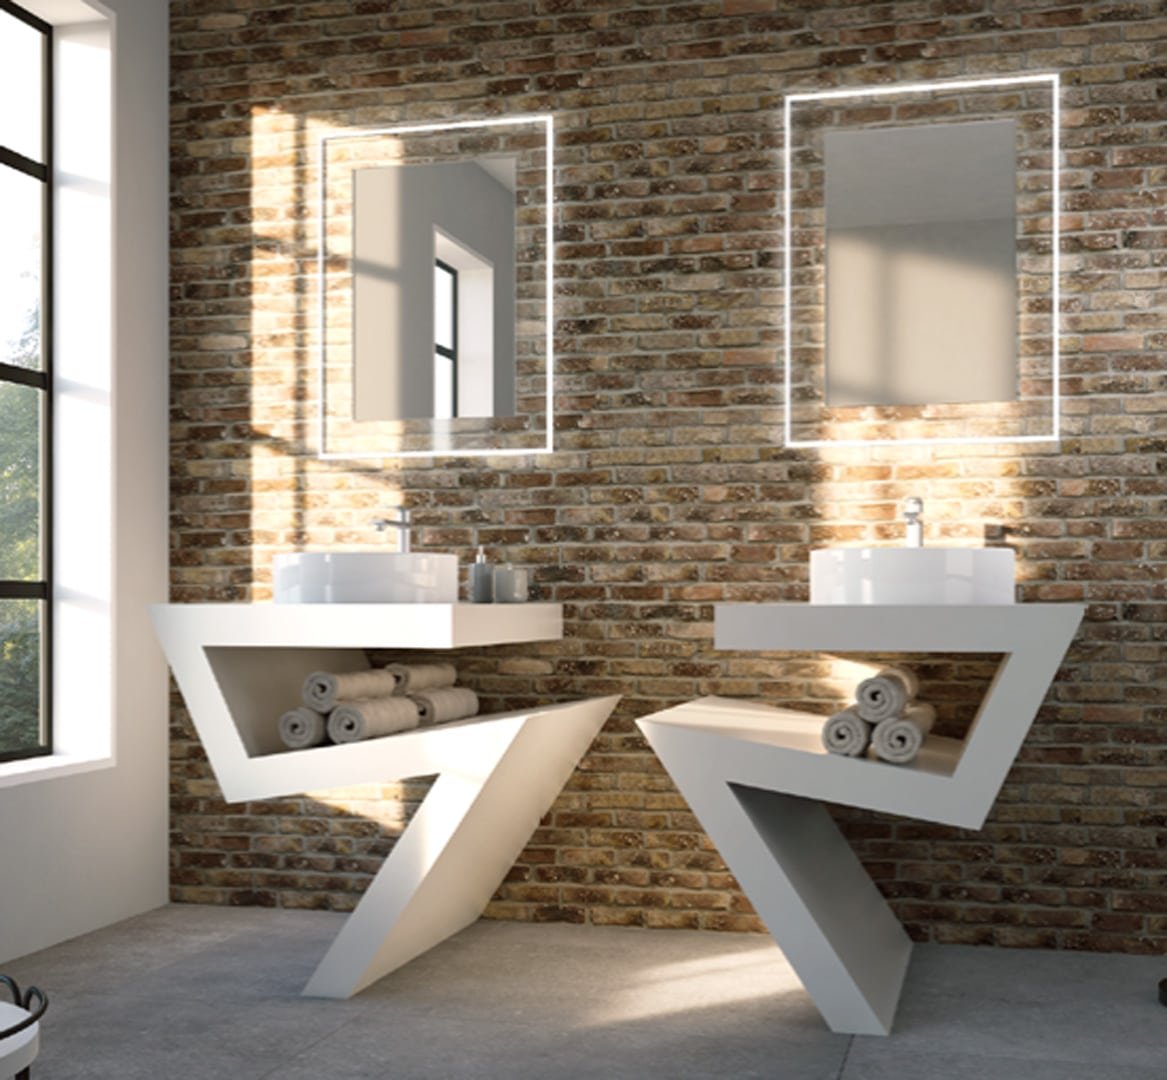 Deux lavabos blancs de forme unique soutenus par des supports en zigzag sur un mur de briques, avec deux miroirs rectangulaires à éclairage